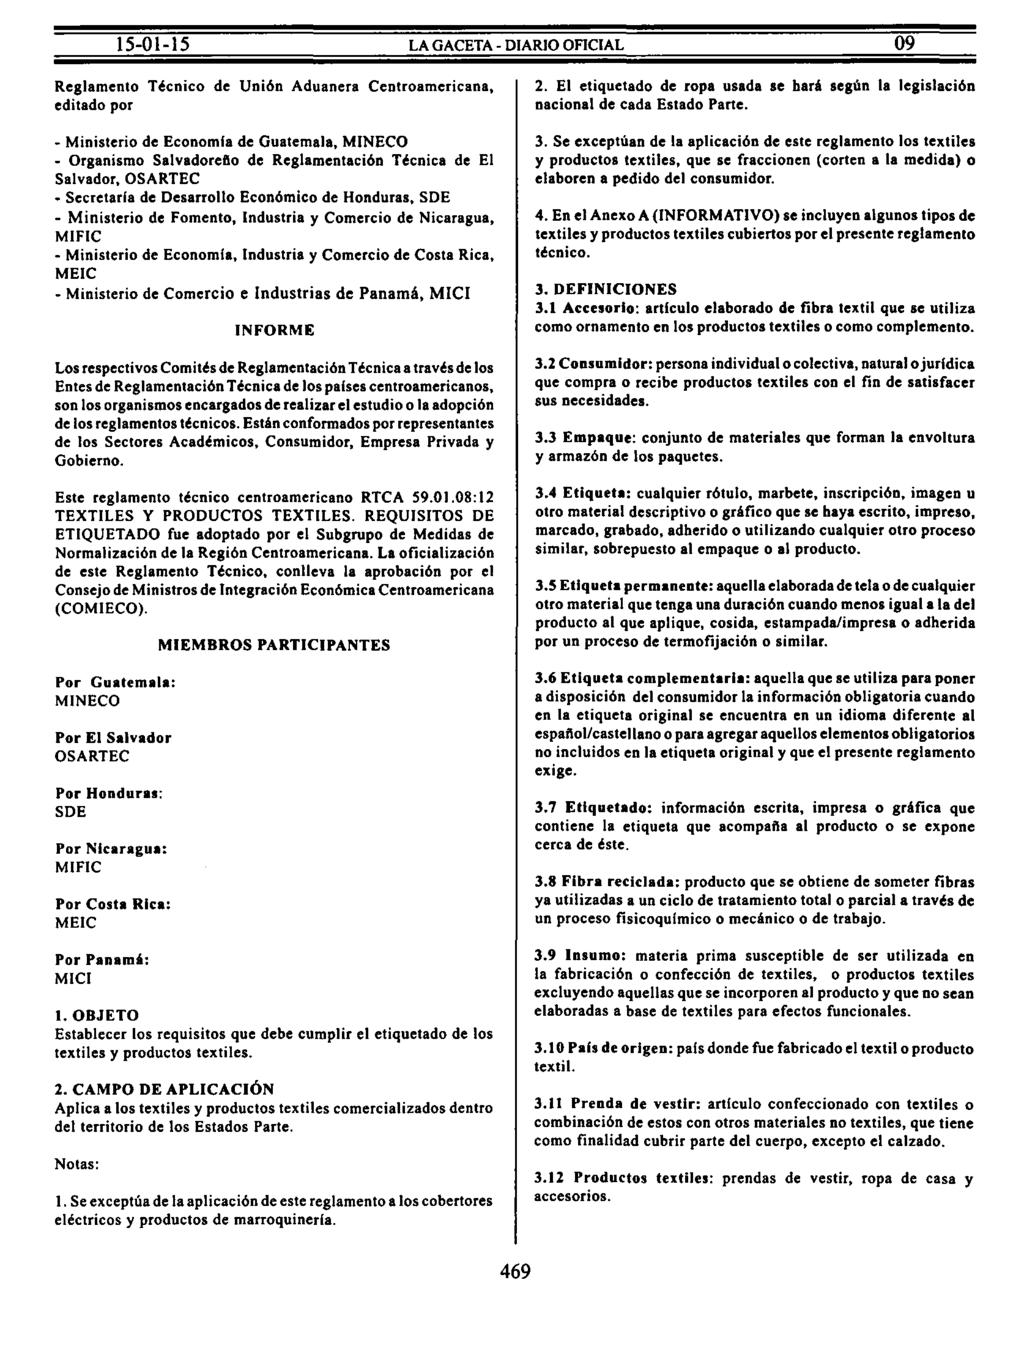 Reglamento Técnico de Unión Aduanera Centroamericana, editado por - Ministerio de Economfa de Guatemala, MINECO - Organismo Salvadorefto de Reglamentación Técnica de El Salvador, OSARTEC - Secretarla